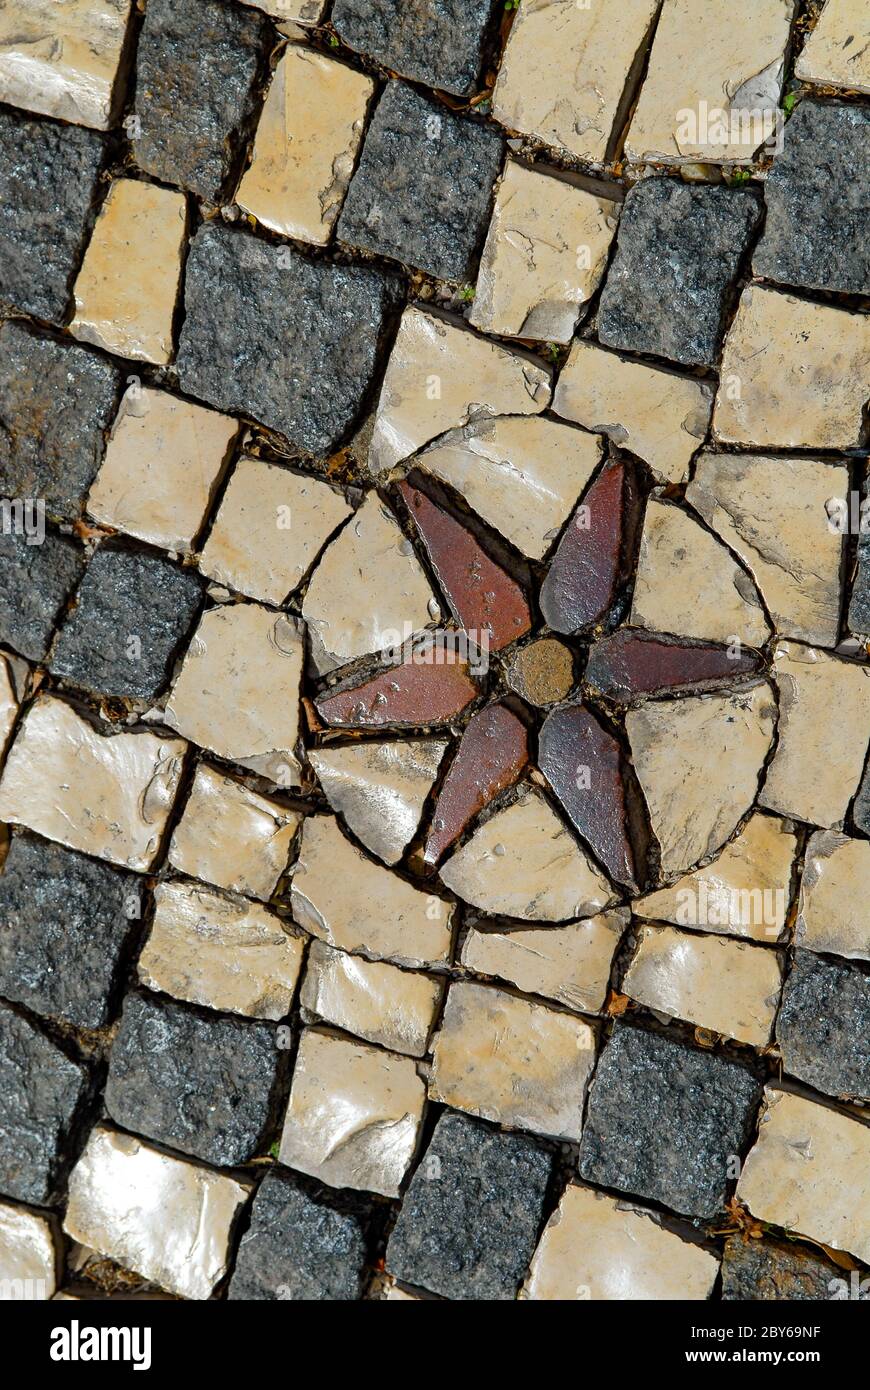 Pavimentazione a mosaico nelle strade di Lisbona in Portogallo Foto Stock